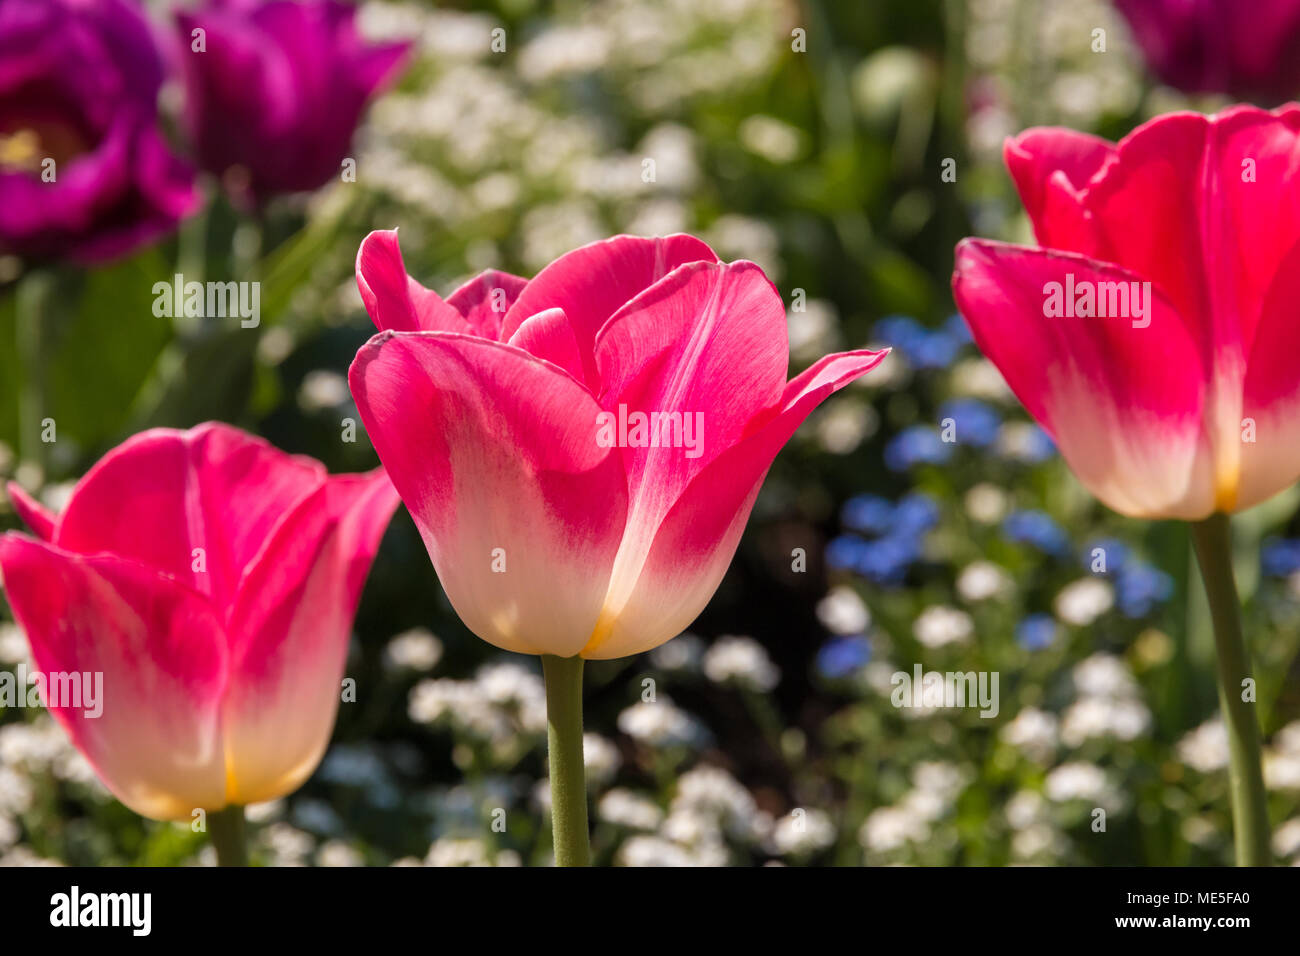 Trois tulipes roses et blanches (Tulipa) Negrita. Le tulip au milieu est mis au point. Ils sont entourés de bleu et blanc forget-me-not fleurs. Banque D'Images